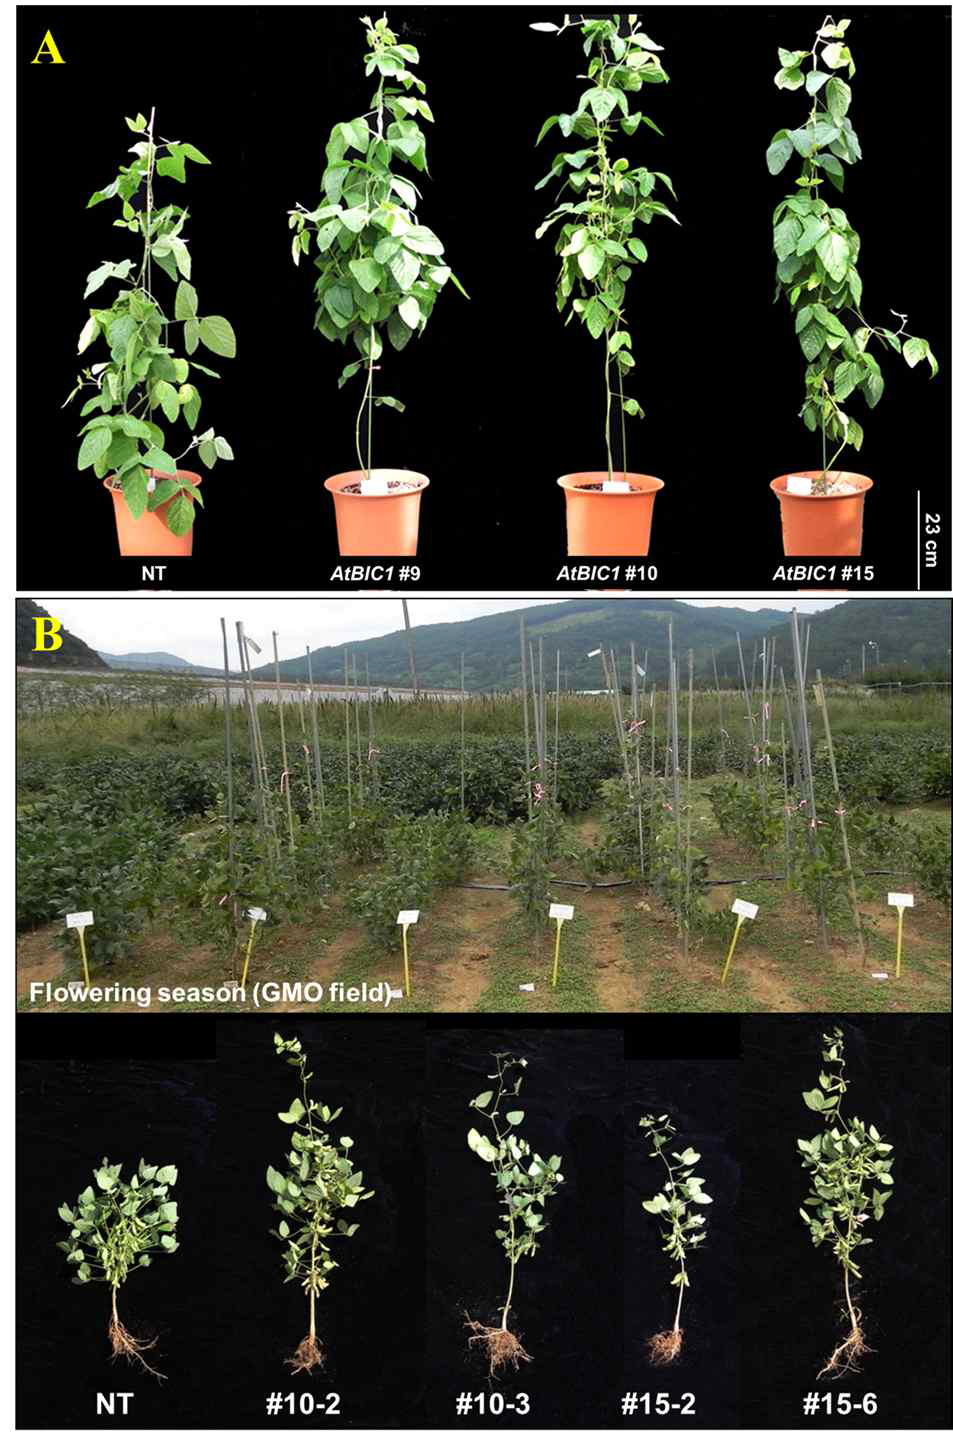 AtBIC1 유전자 과발현 콩 식물체의 표현형 분석 결과. 온실 (A) 및 GMO 포장(B)에서 키운 콩 식물체를 보여주고 있다. 대조구 식물체(NT)에 비하여 AtBIC1 형질전환 콩은 식물체 키가 크게 증대되었음을 관찰할 수 있다